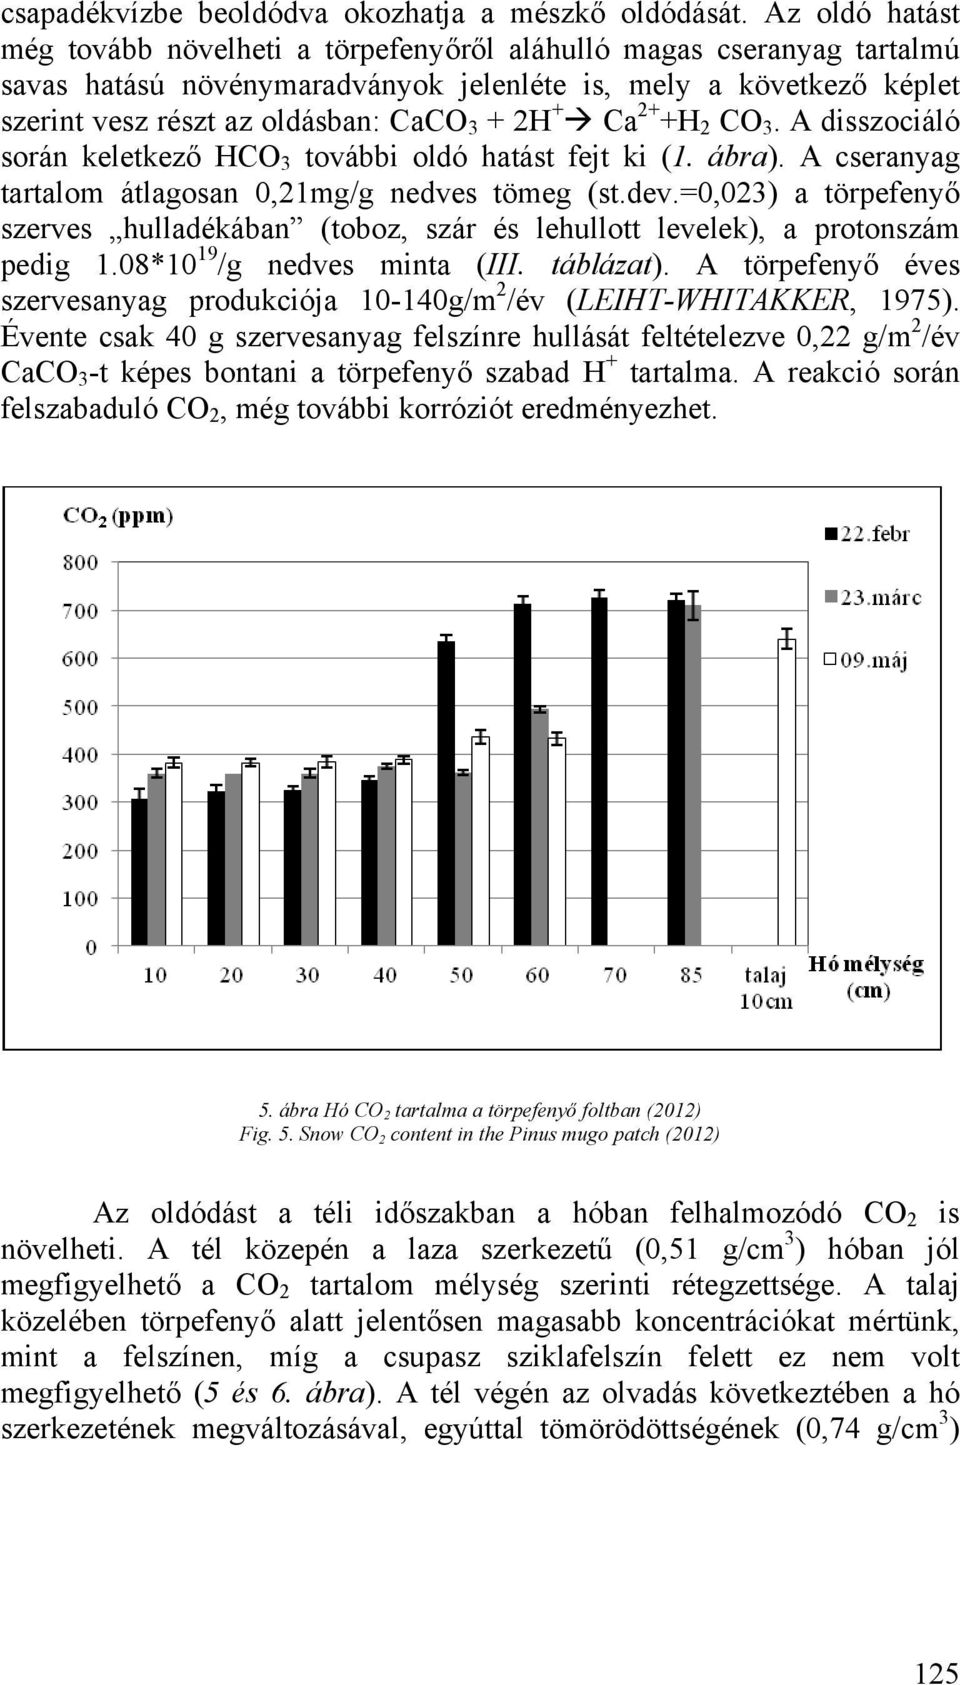 + Ca 2+ +H 2 CO 3. A disszociáló során keletkező HCO 3 további oldó hatást fejt ki (1. ábra). A cseranyag tartalom átlagosan 0,21mg/g nedves tömeg (st.dev.